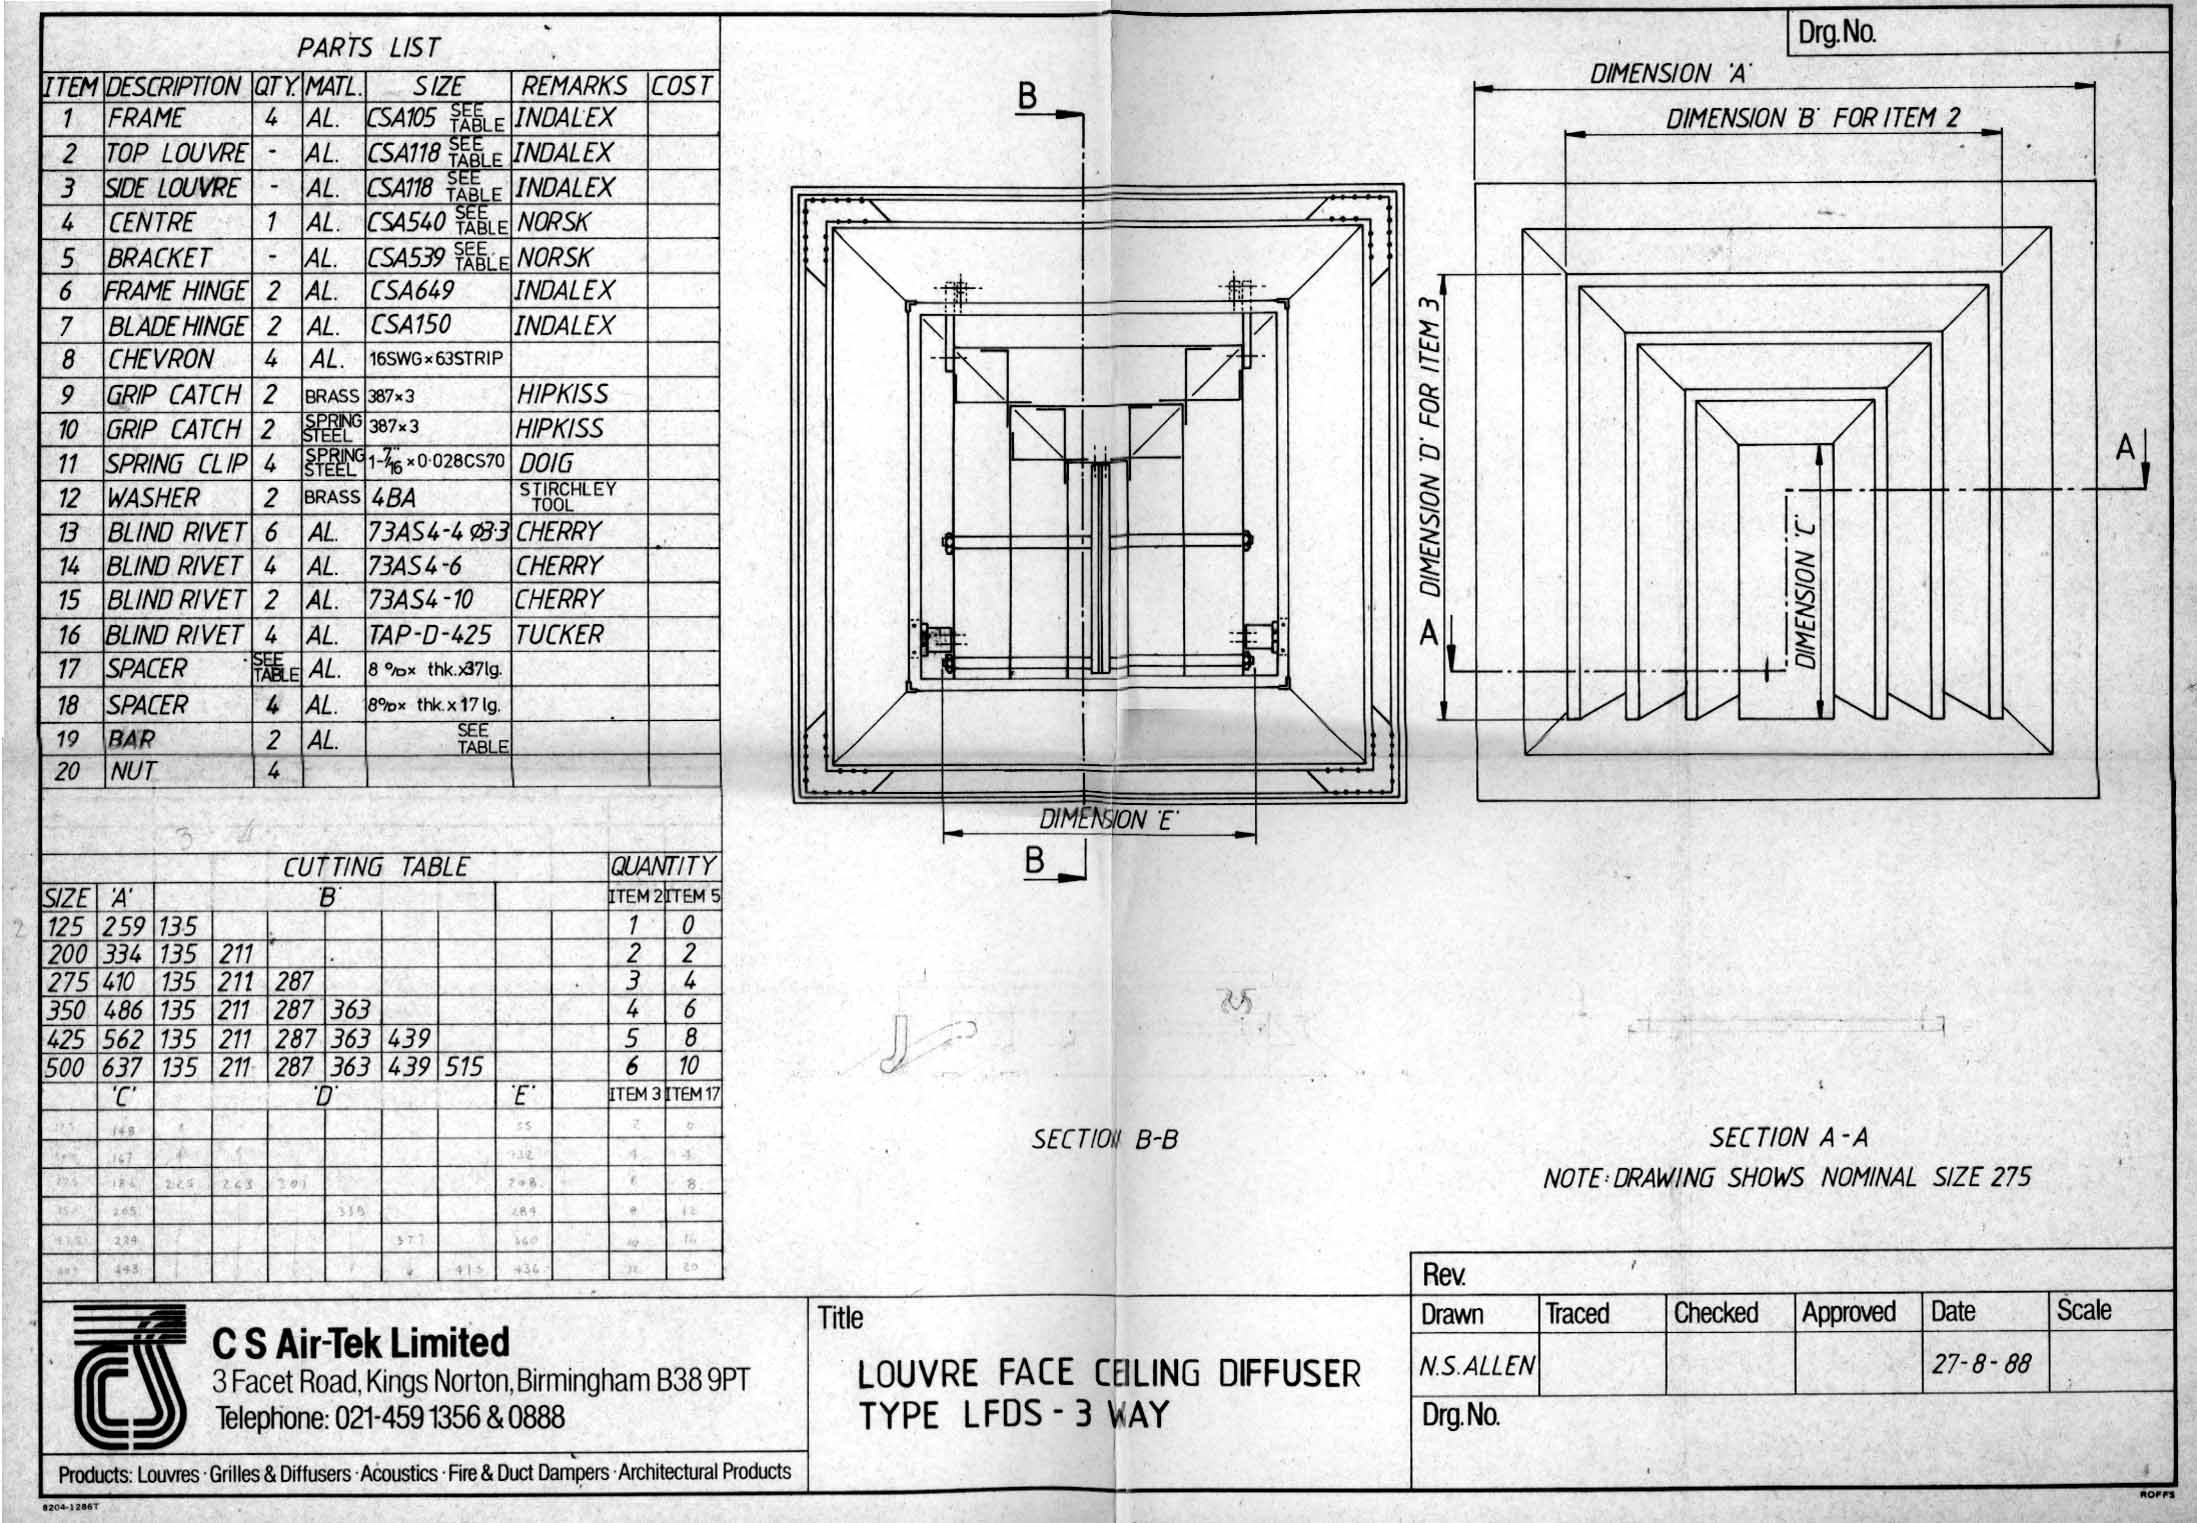 Images Ed 1994 Engineering Drawings/image015.jpg